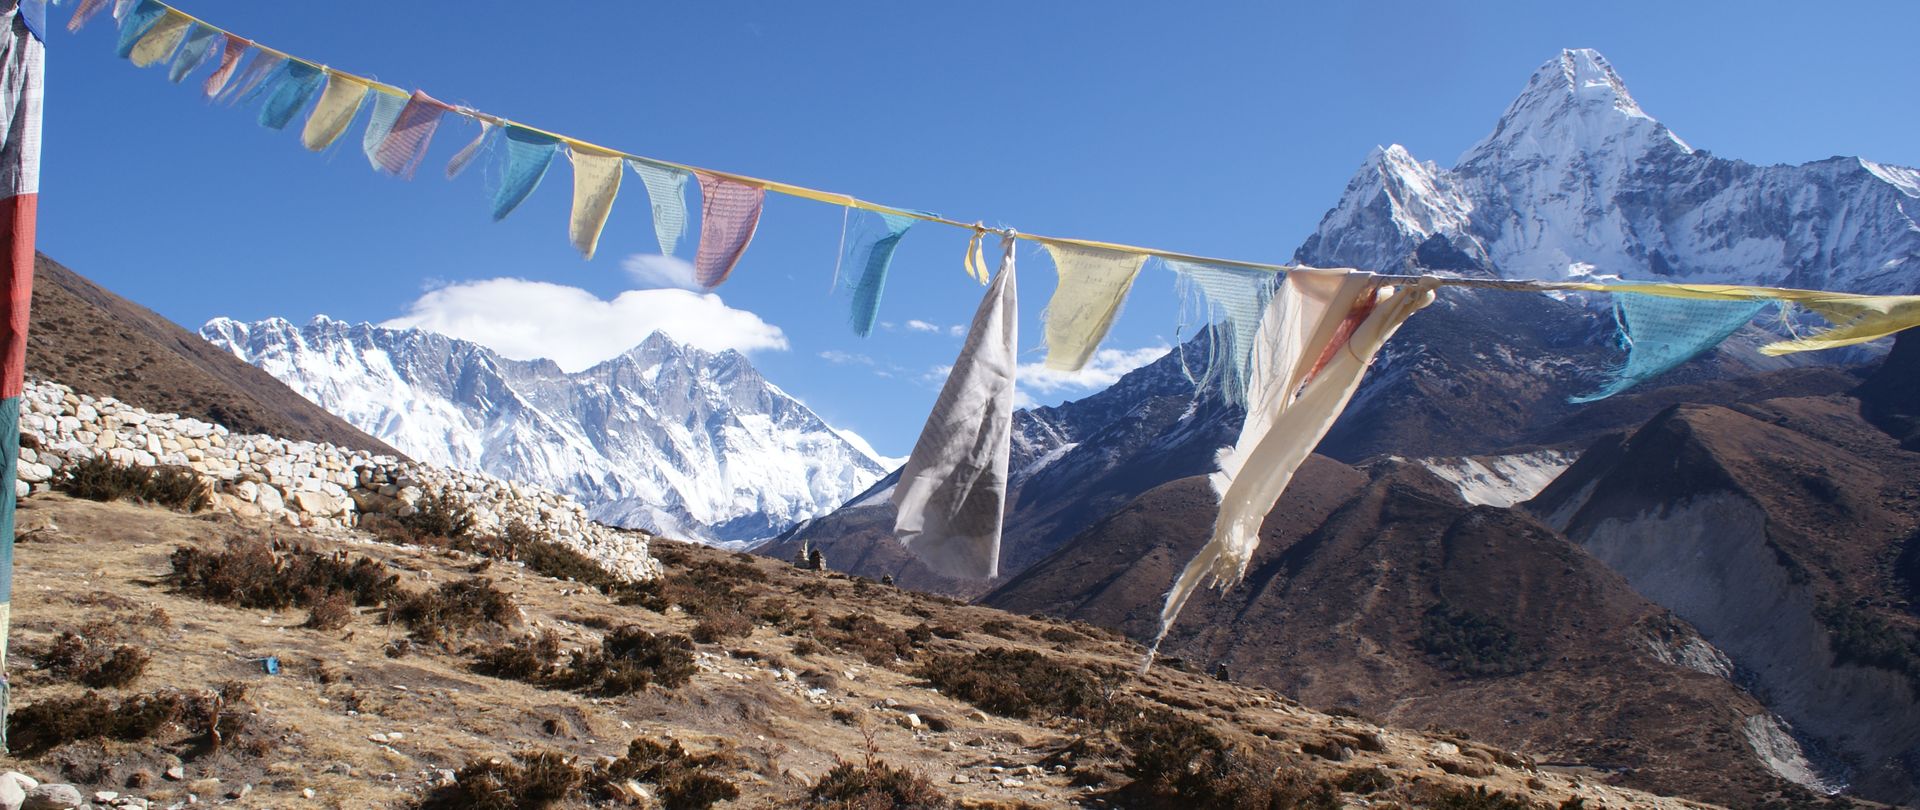 Camp de Base de l'Everest en confort - sans sac